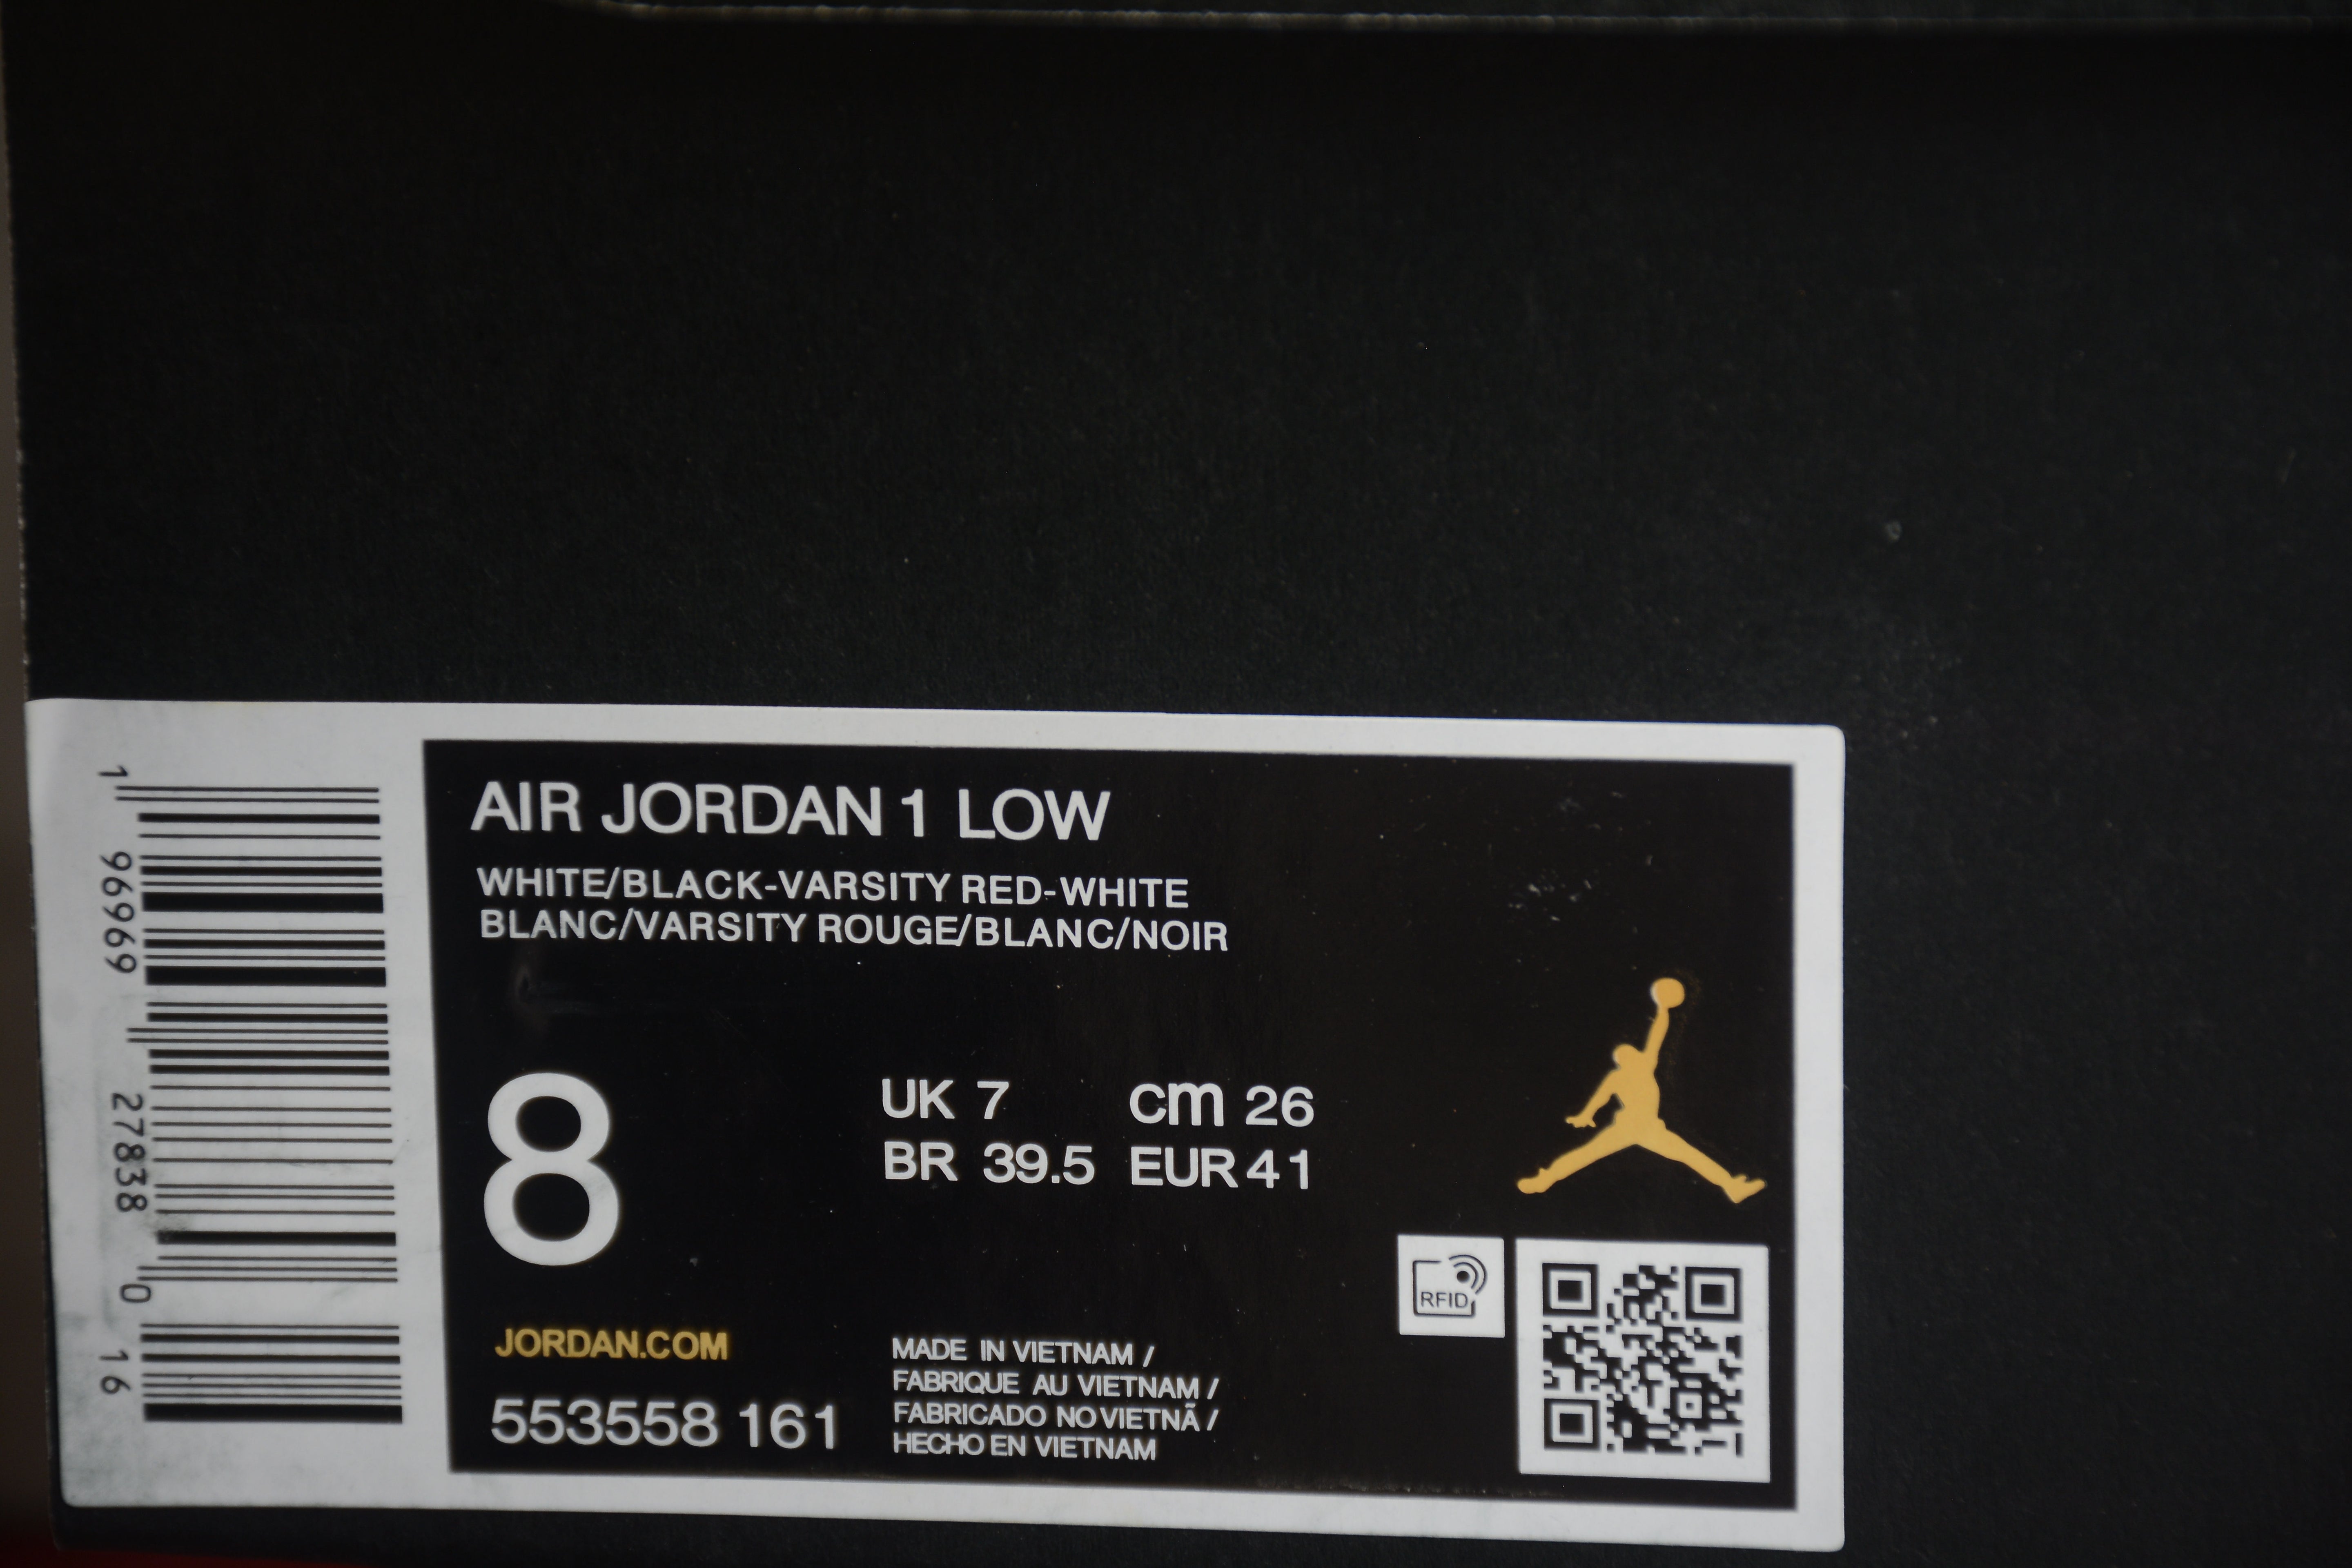 Air Jordan 1 AJ1 Low - Bred Toe